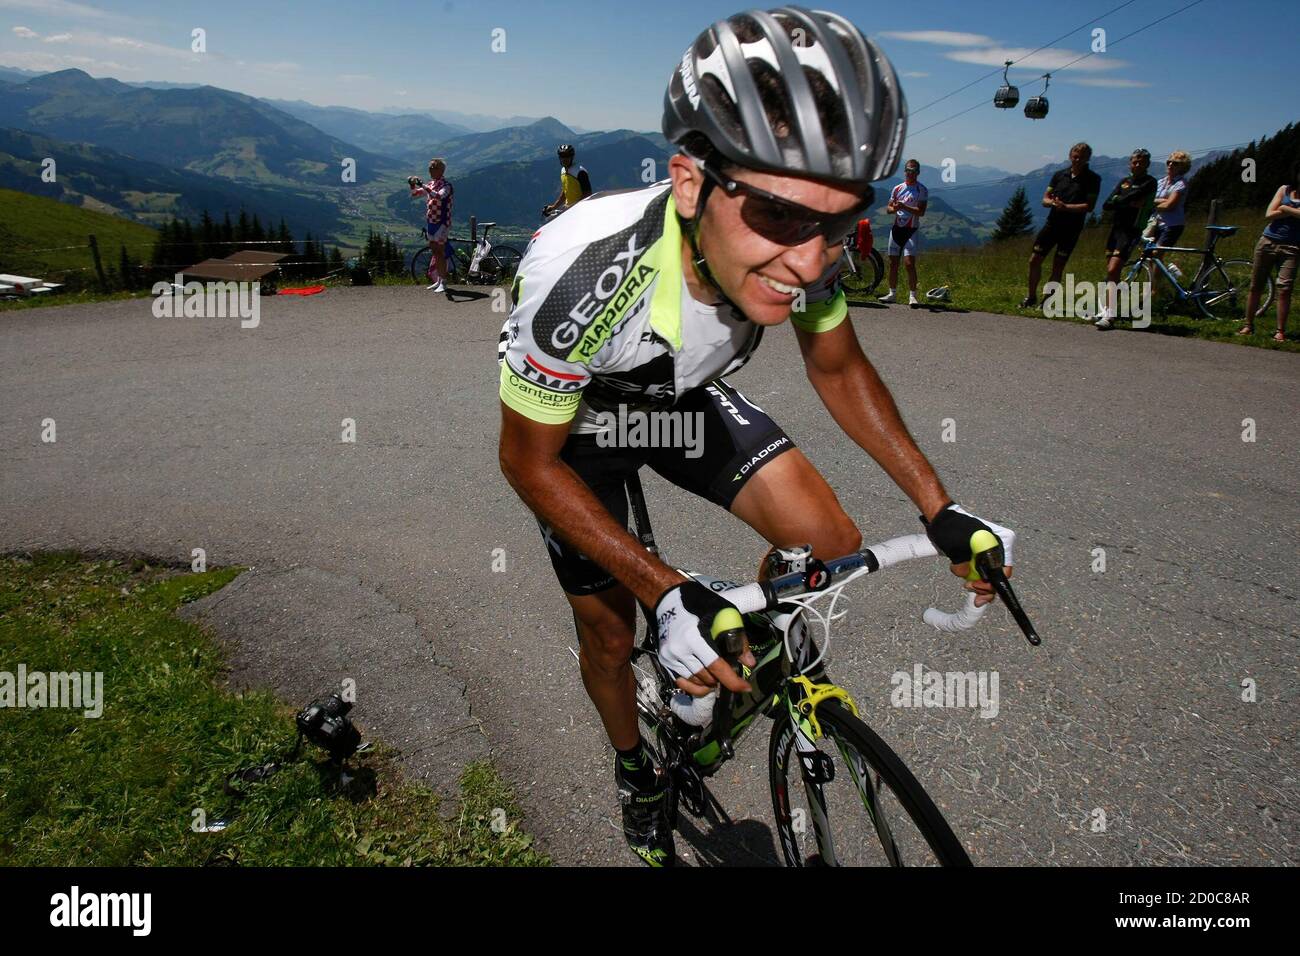 El piloto del equipo Geox Carlos Sastre de España compite durante la  segunda etapa de la 63ª gira ciclista austriaca en Kitzbuehel 4 de julio de  2011. REUTERS/Dominic Ebenbichler (AUSTRIA - Tags: